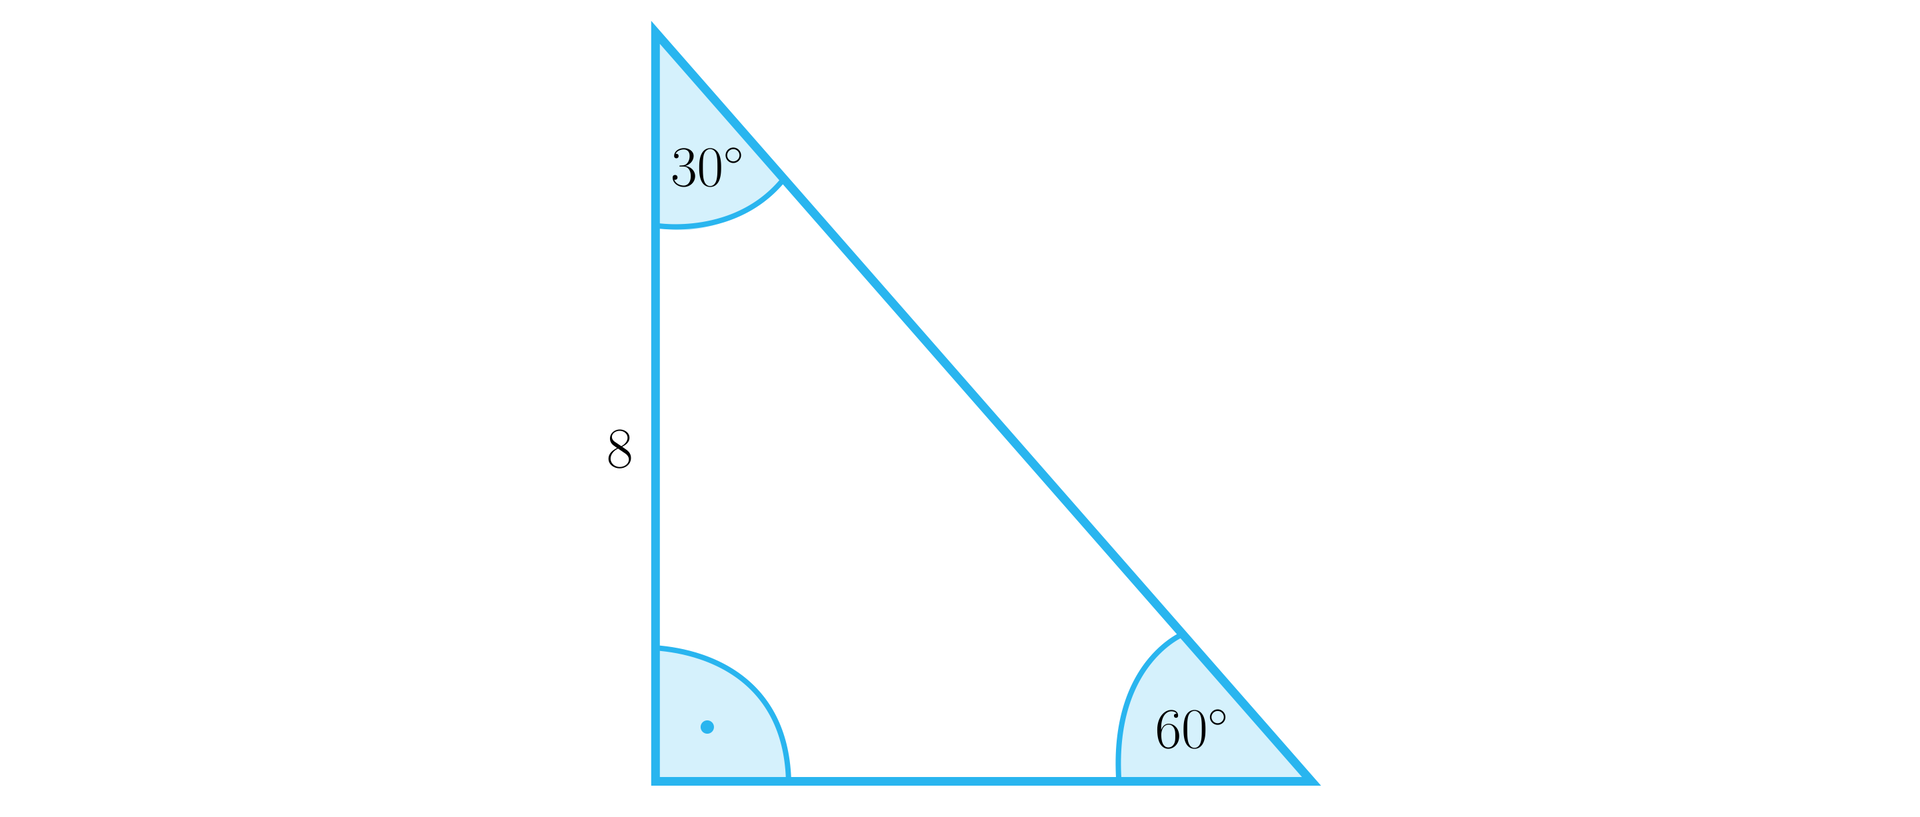 Ilustracja przedstawia trójkąt prostokątny o pionowej przyprostokątnej o długości 8. W trójkącie zaznaczono trzy kąty wewnętrzne: kąt prosty między przyprostokątnymi, kąt o mierze trzydziestu stopni między bokiem o długości 8 a przeciwprostokątną oraz kąt o mierze sześćdziesięciu stopni między przeciwprostokątną a podstawą trójkąta.